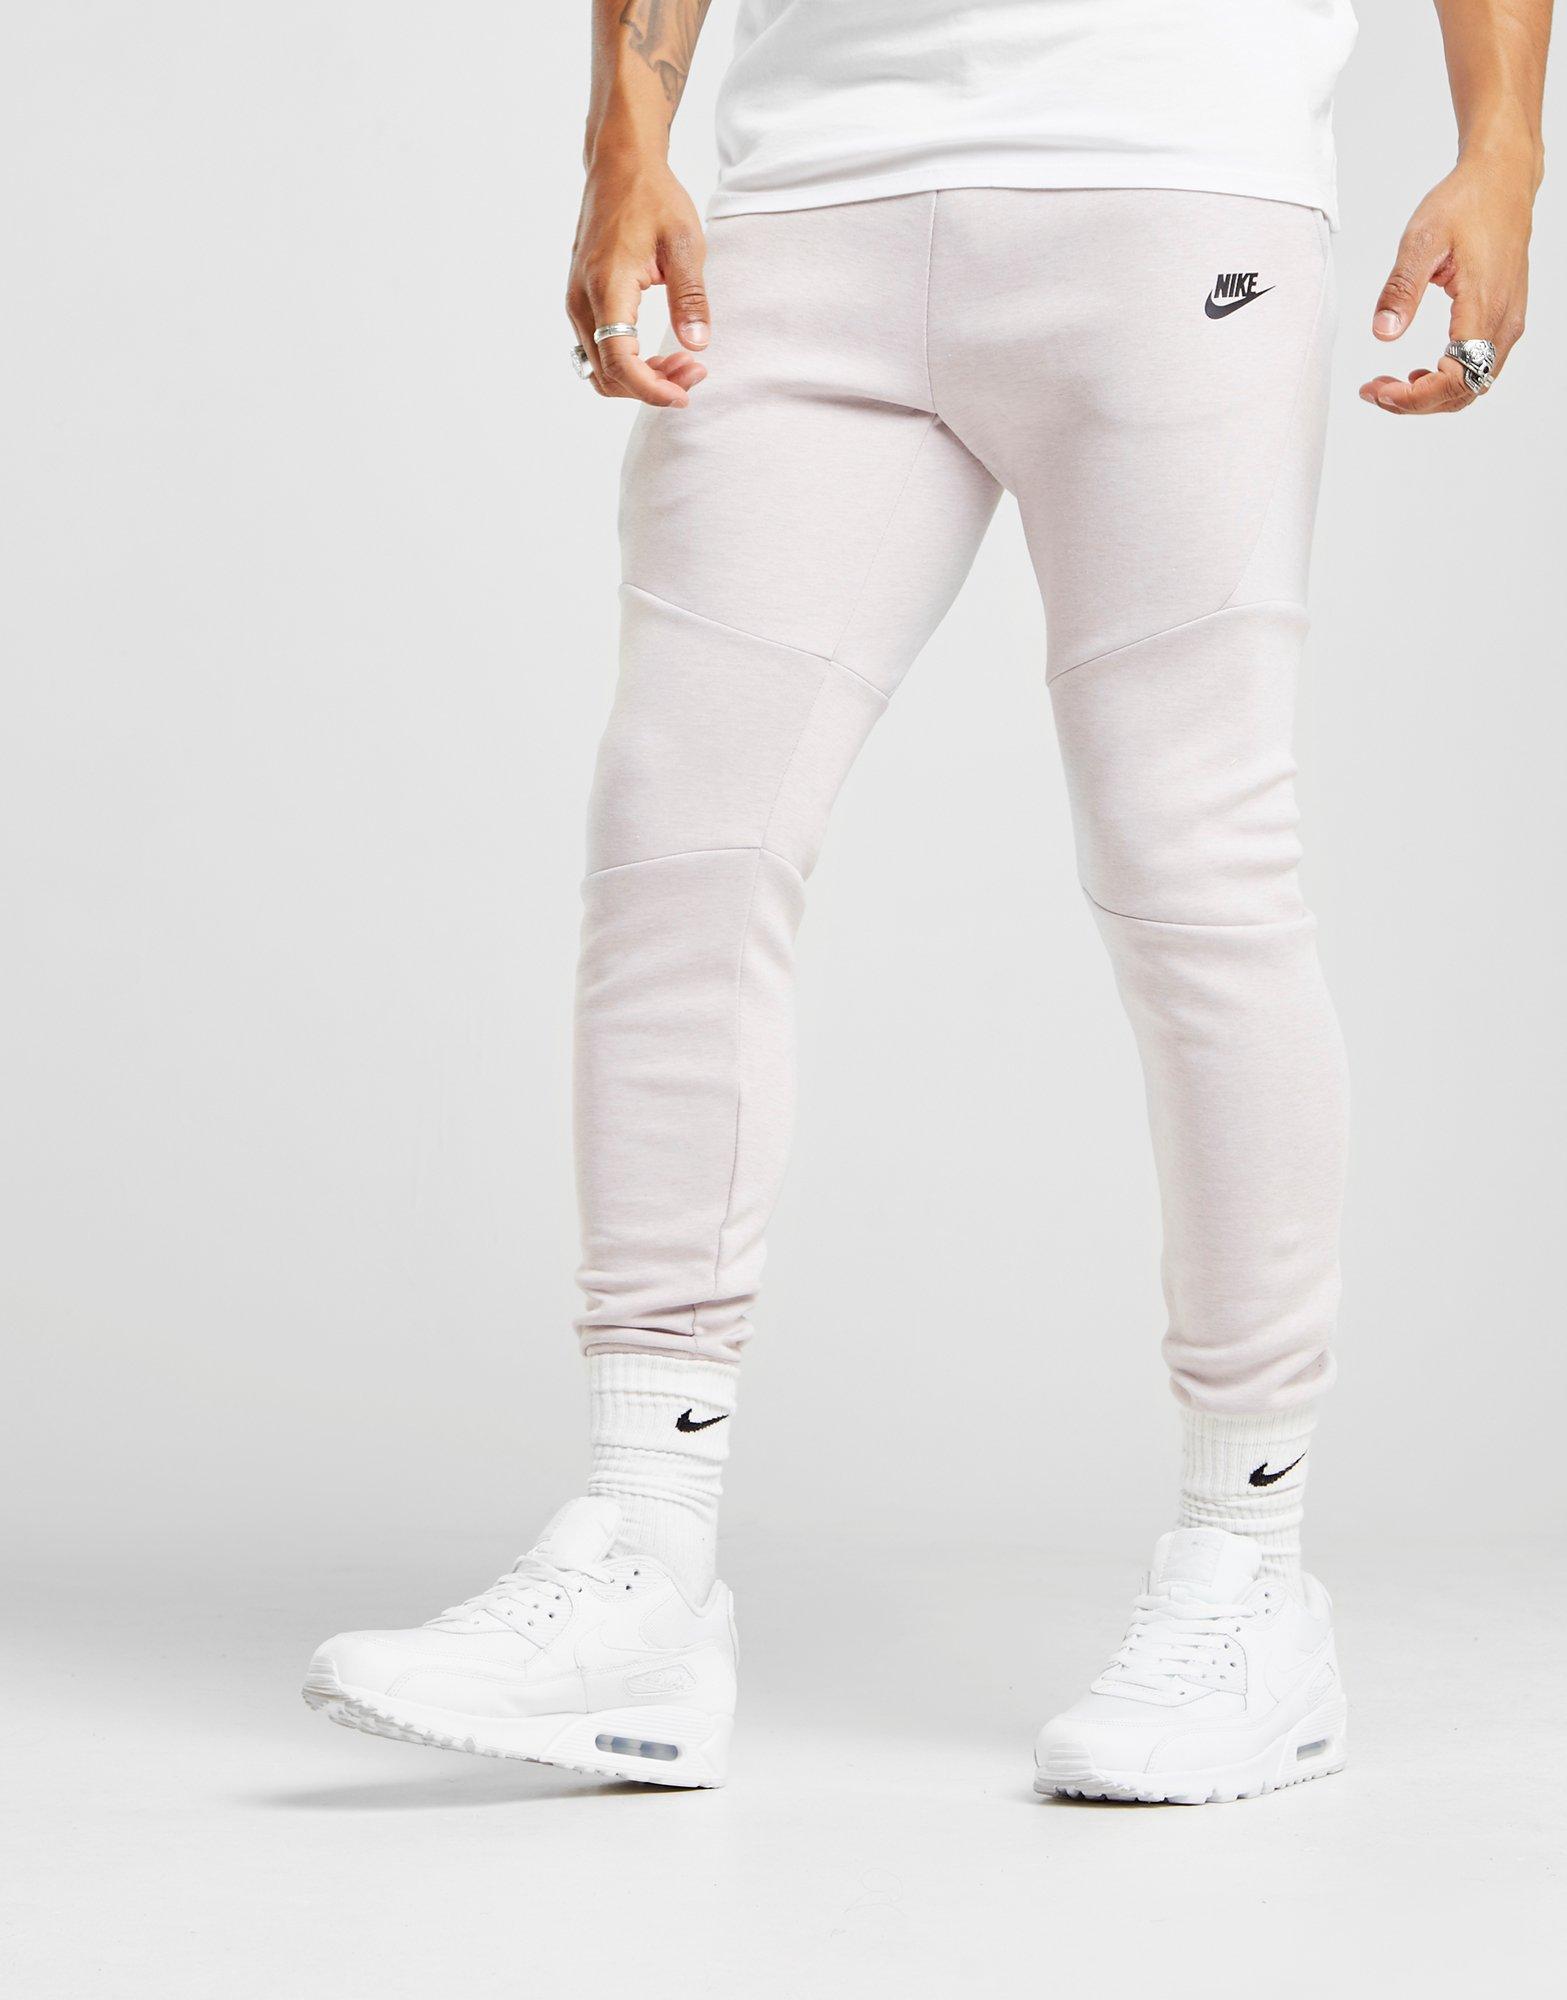 white tech fleece pants